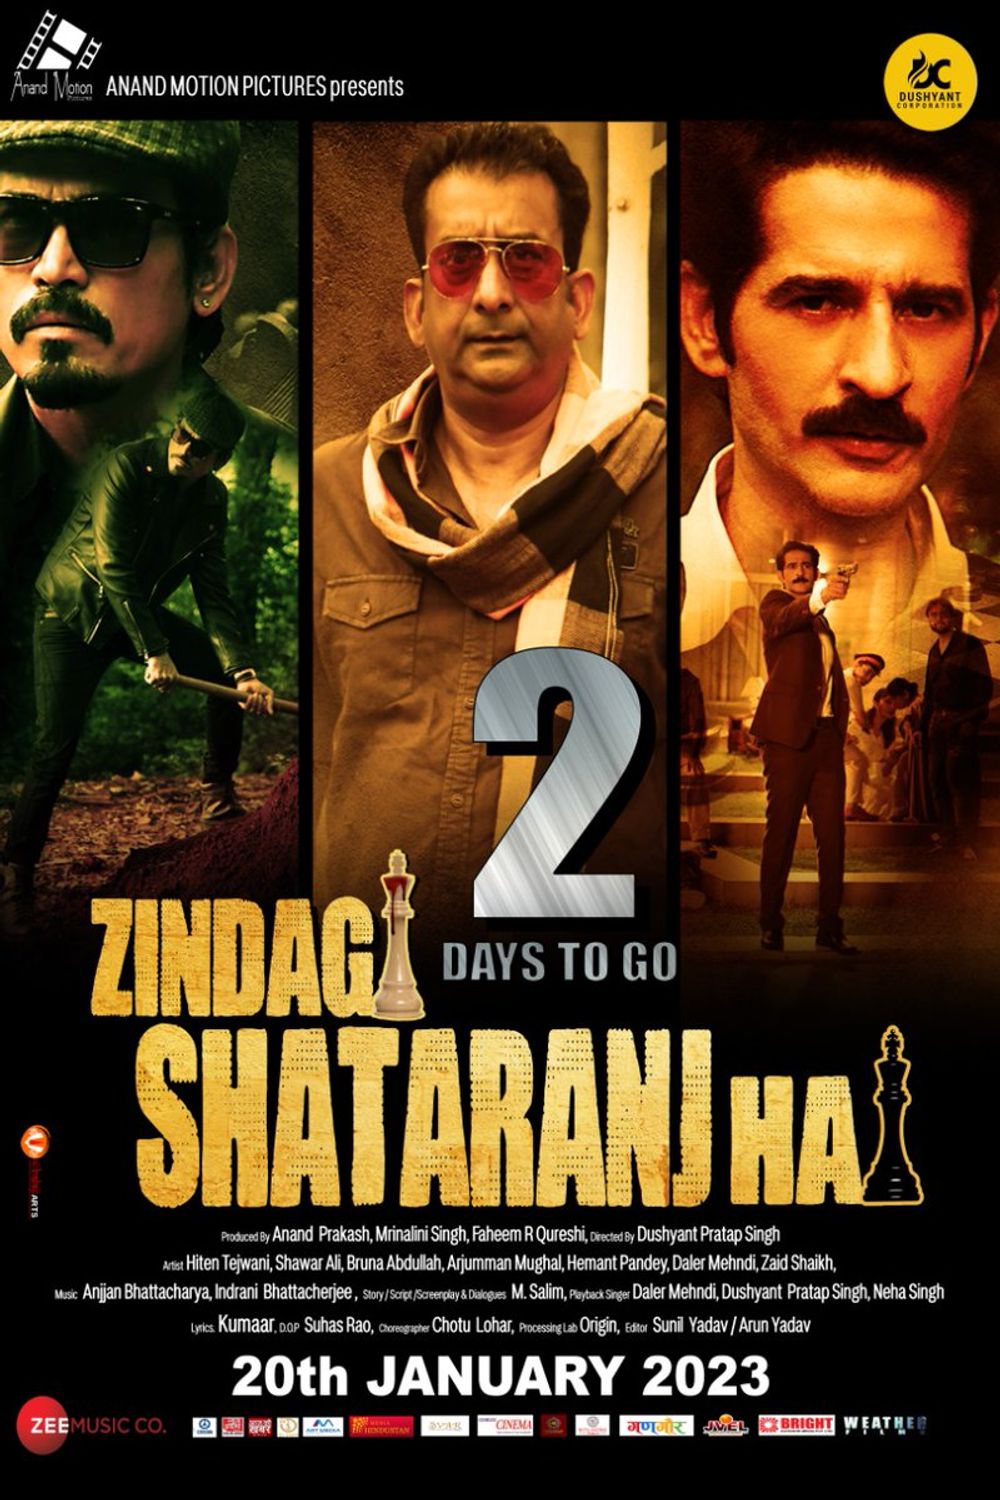 Zindagi Shatranj Hai Movie Review